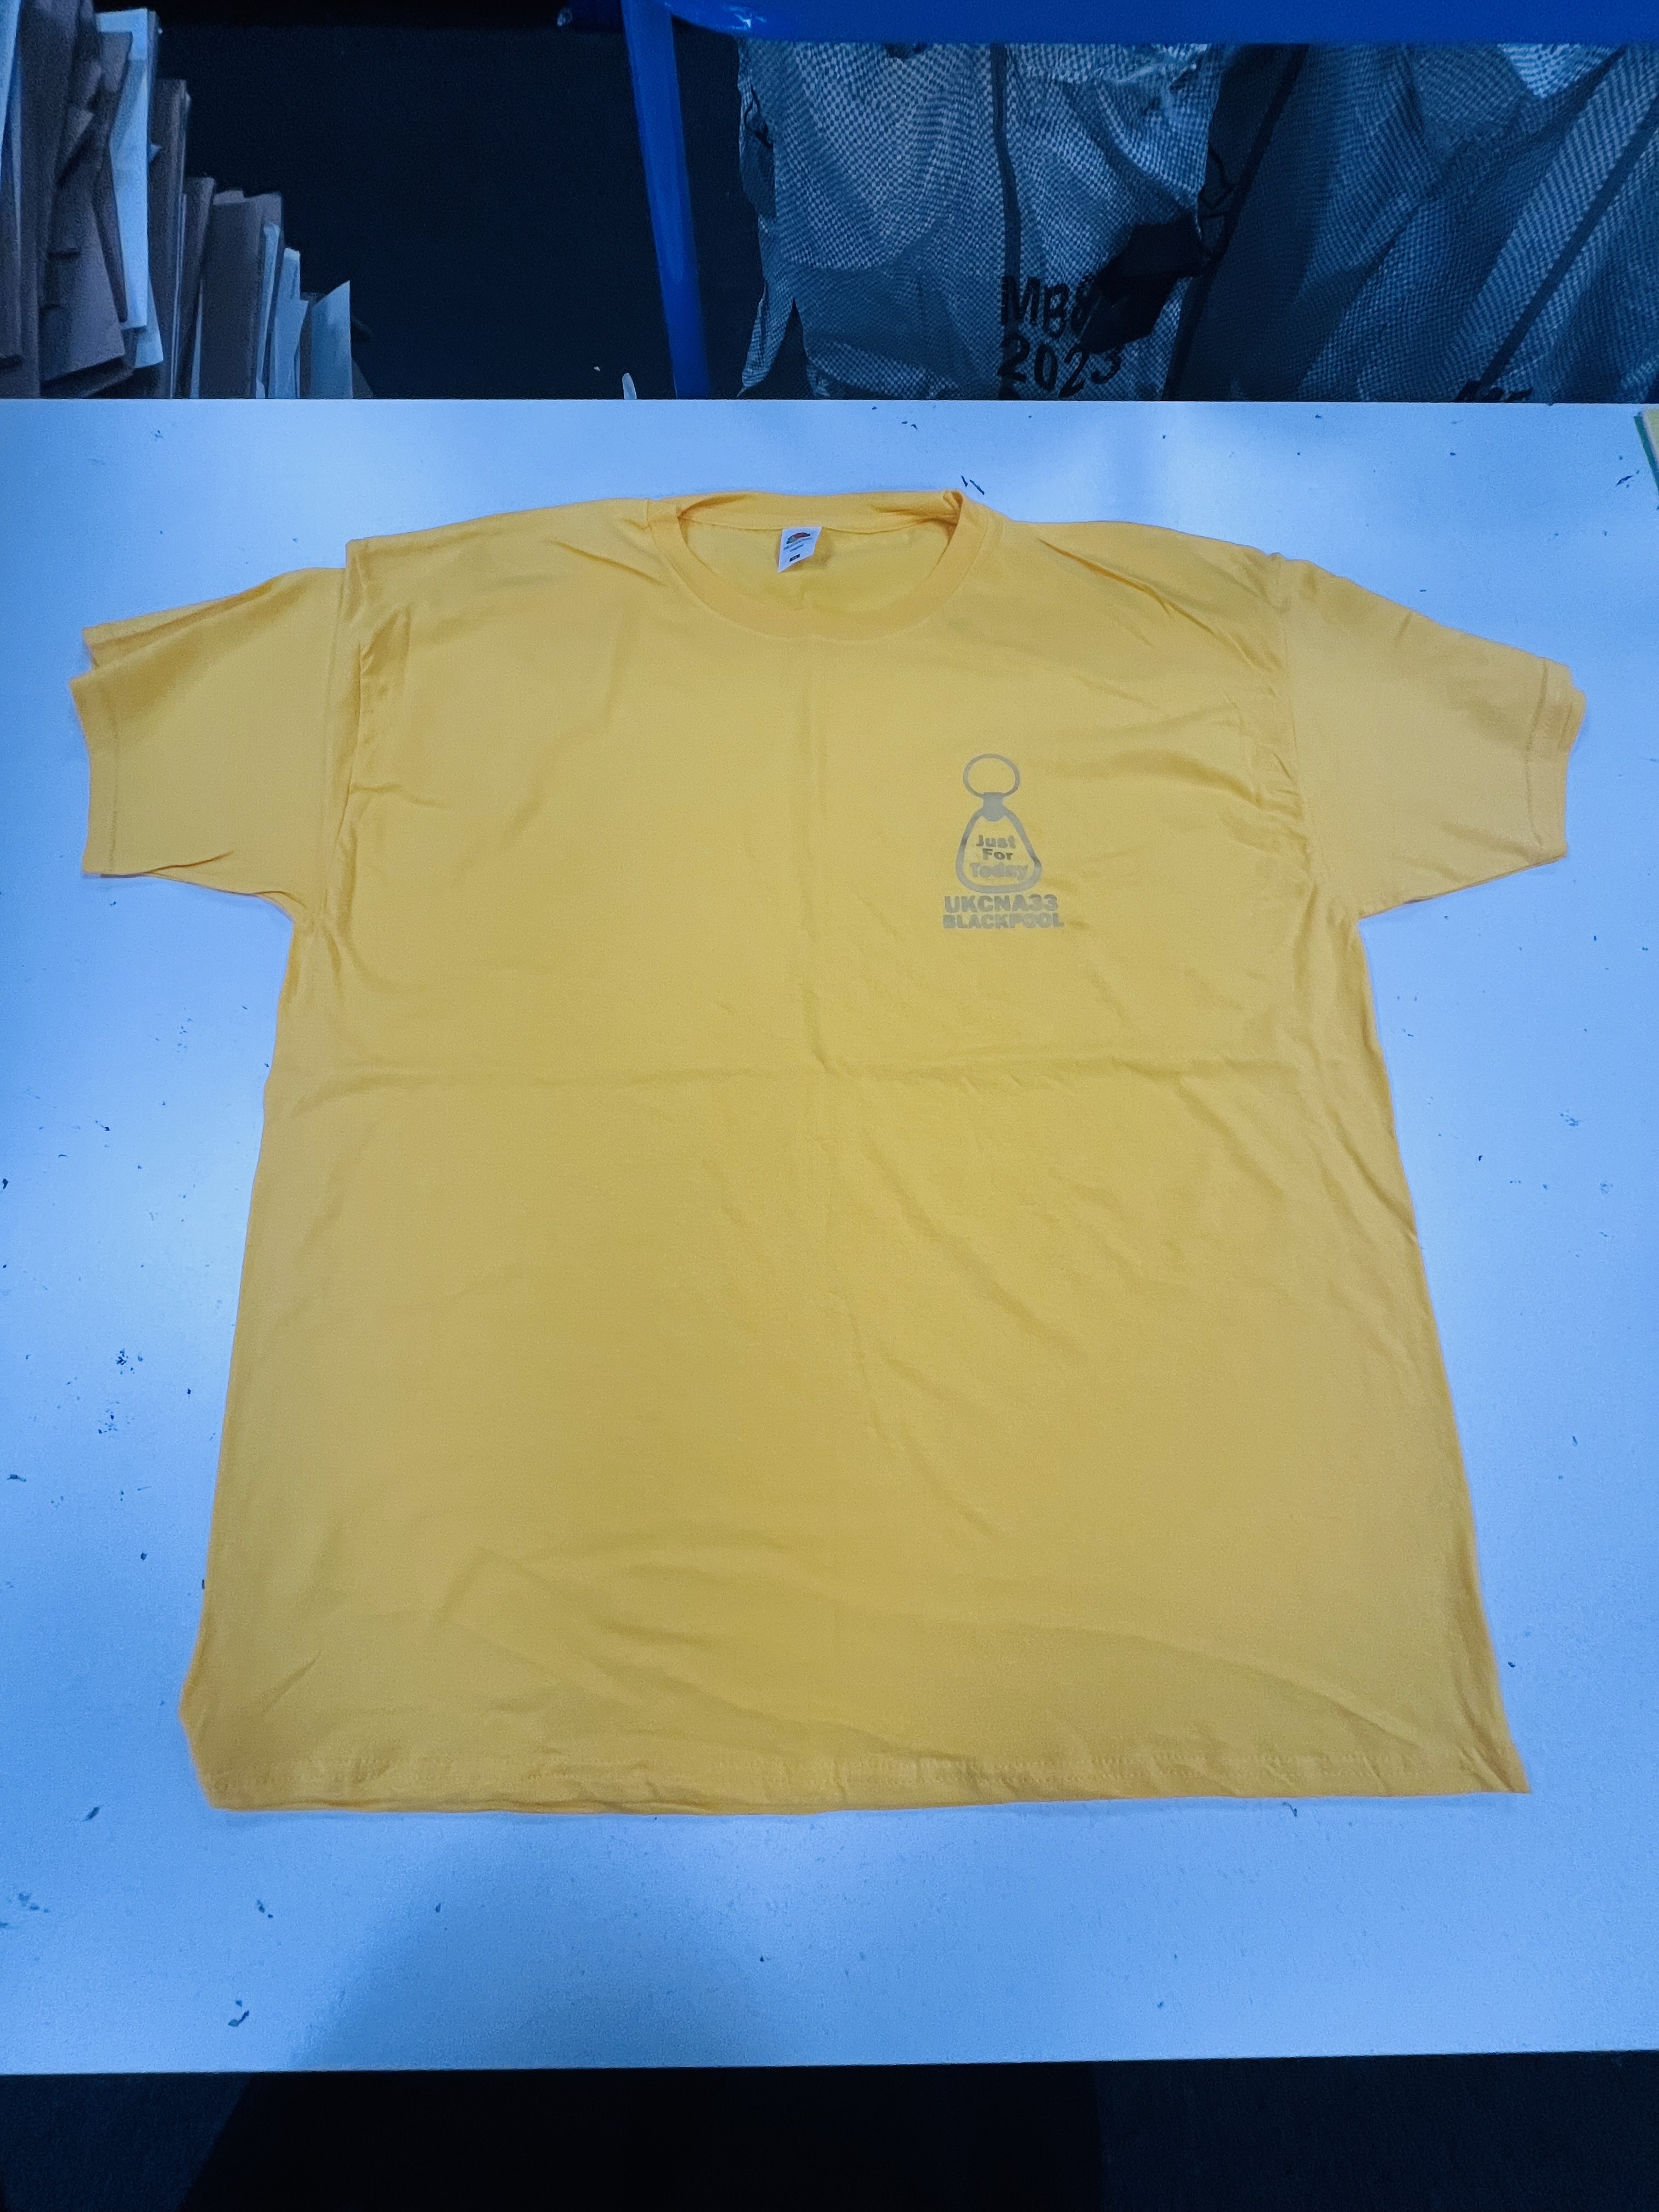 Yellow t shirt